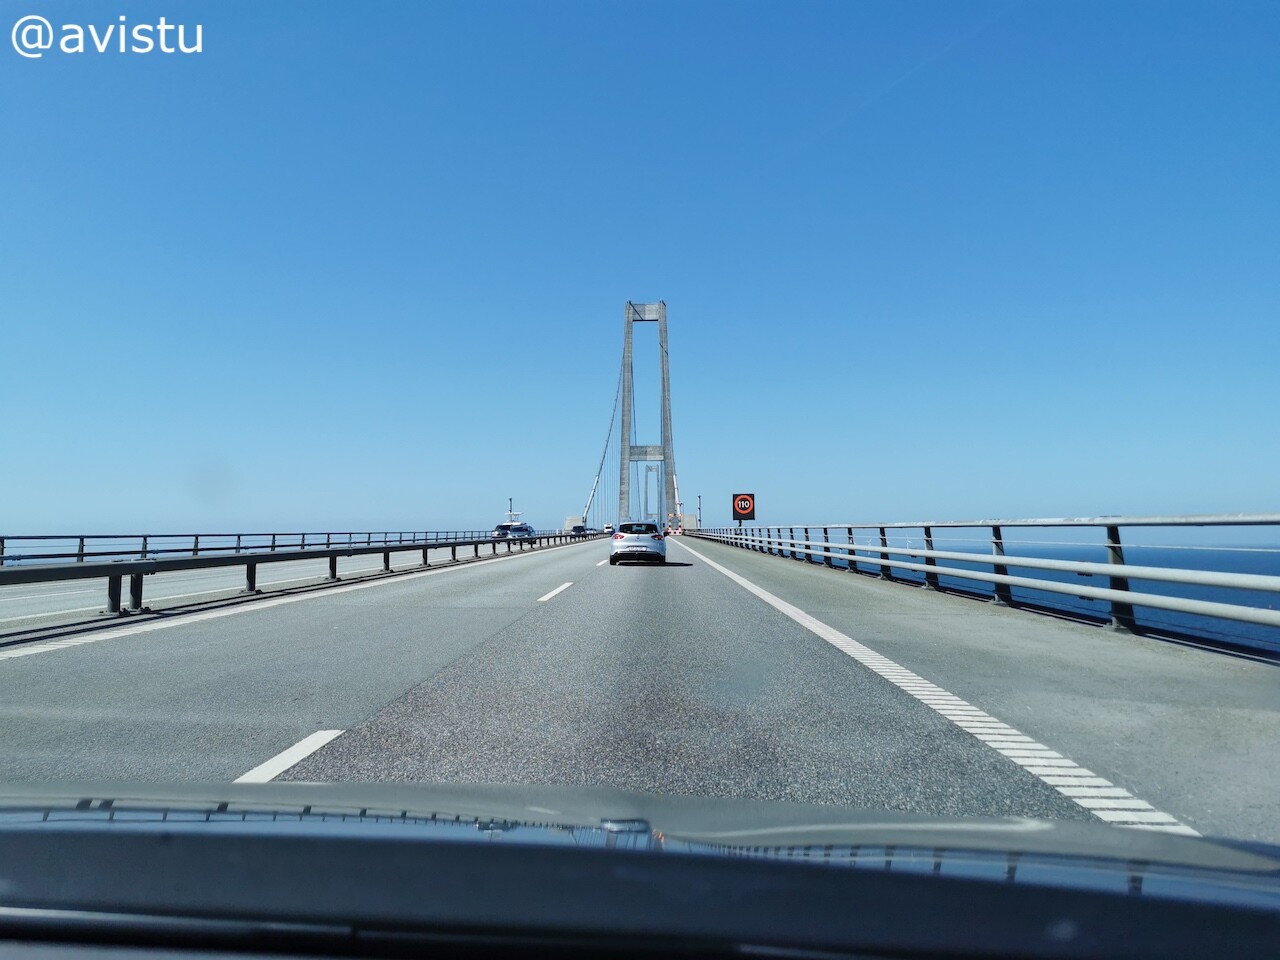 Cruzando el Puente Storebælt en Dinamarca